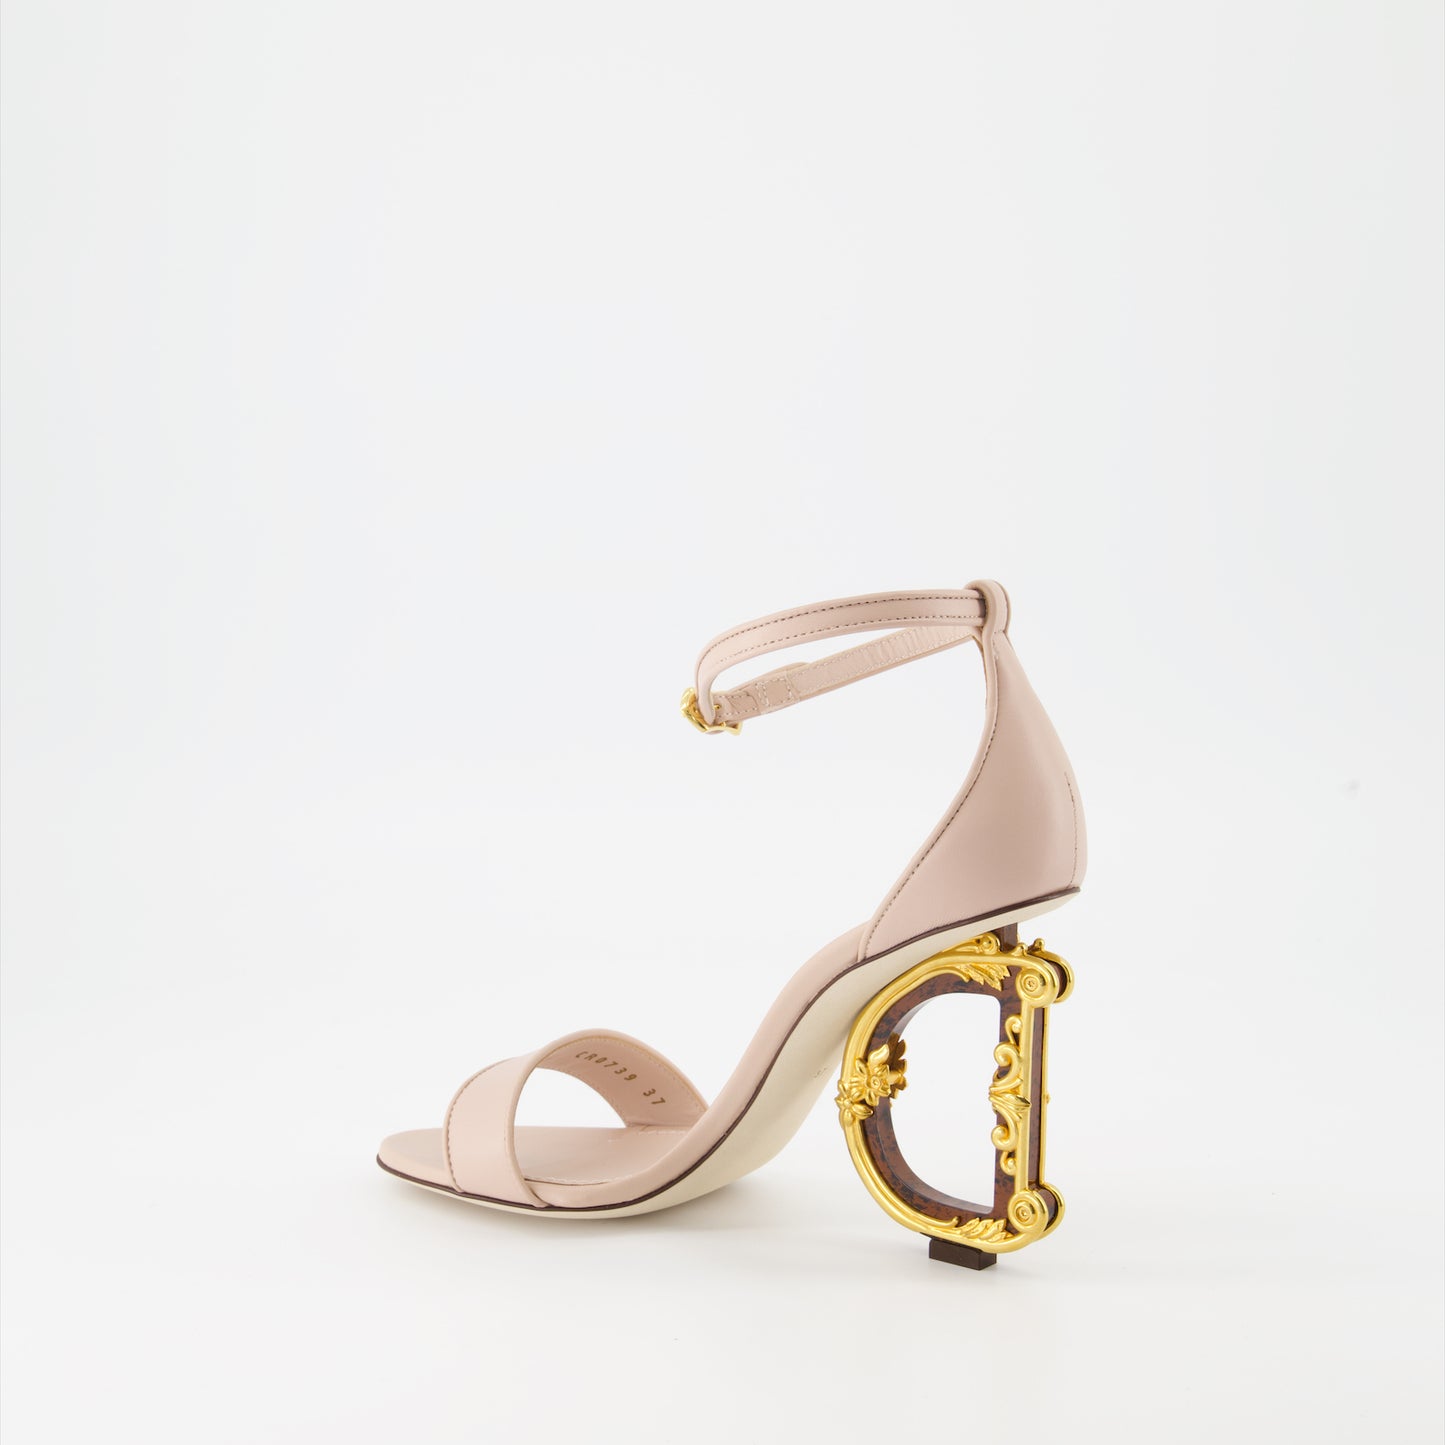 DG Baroque heeled sandals